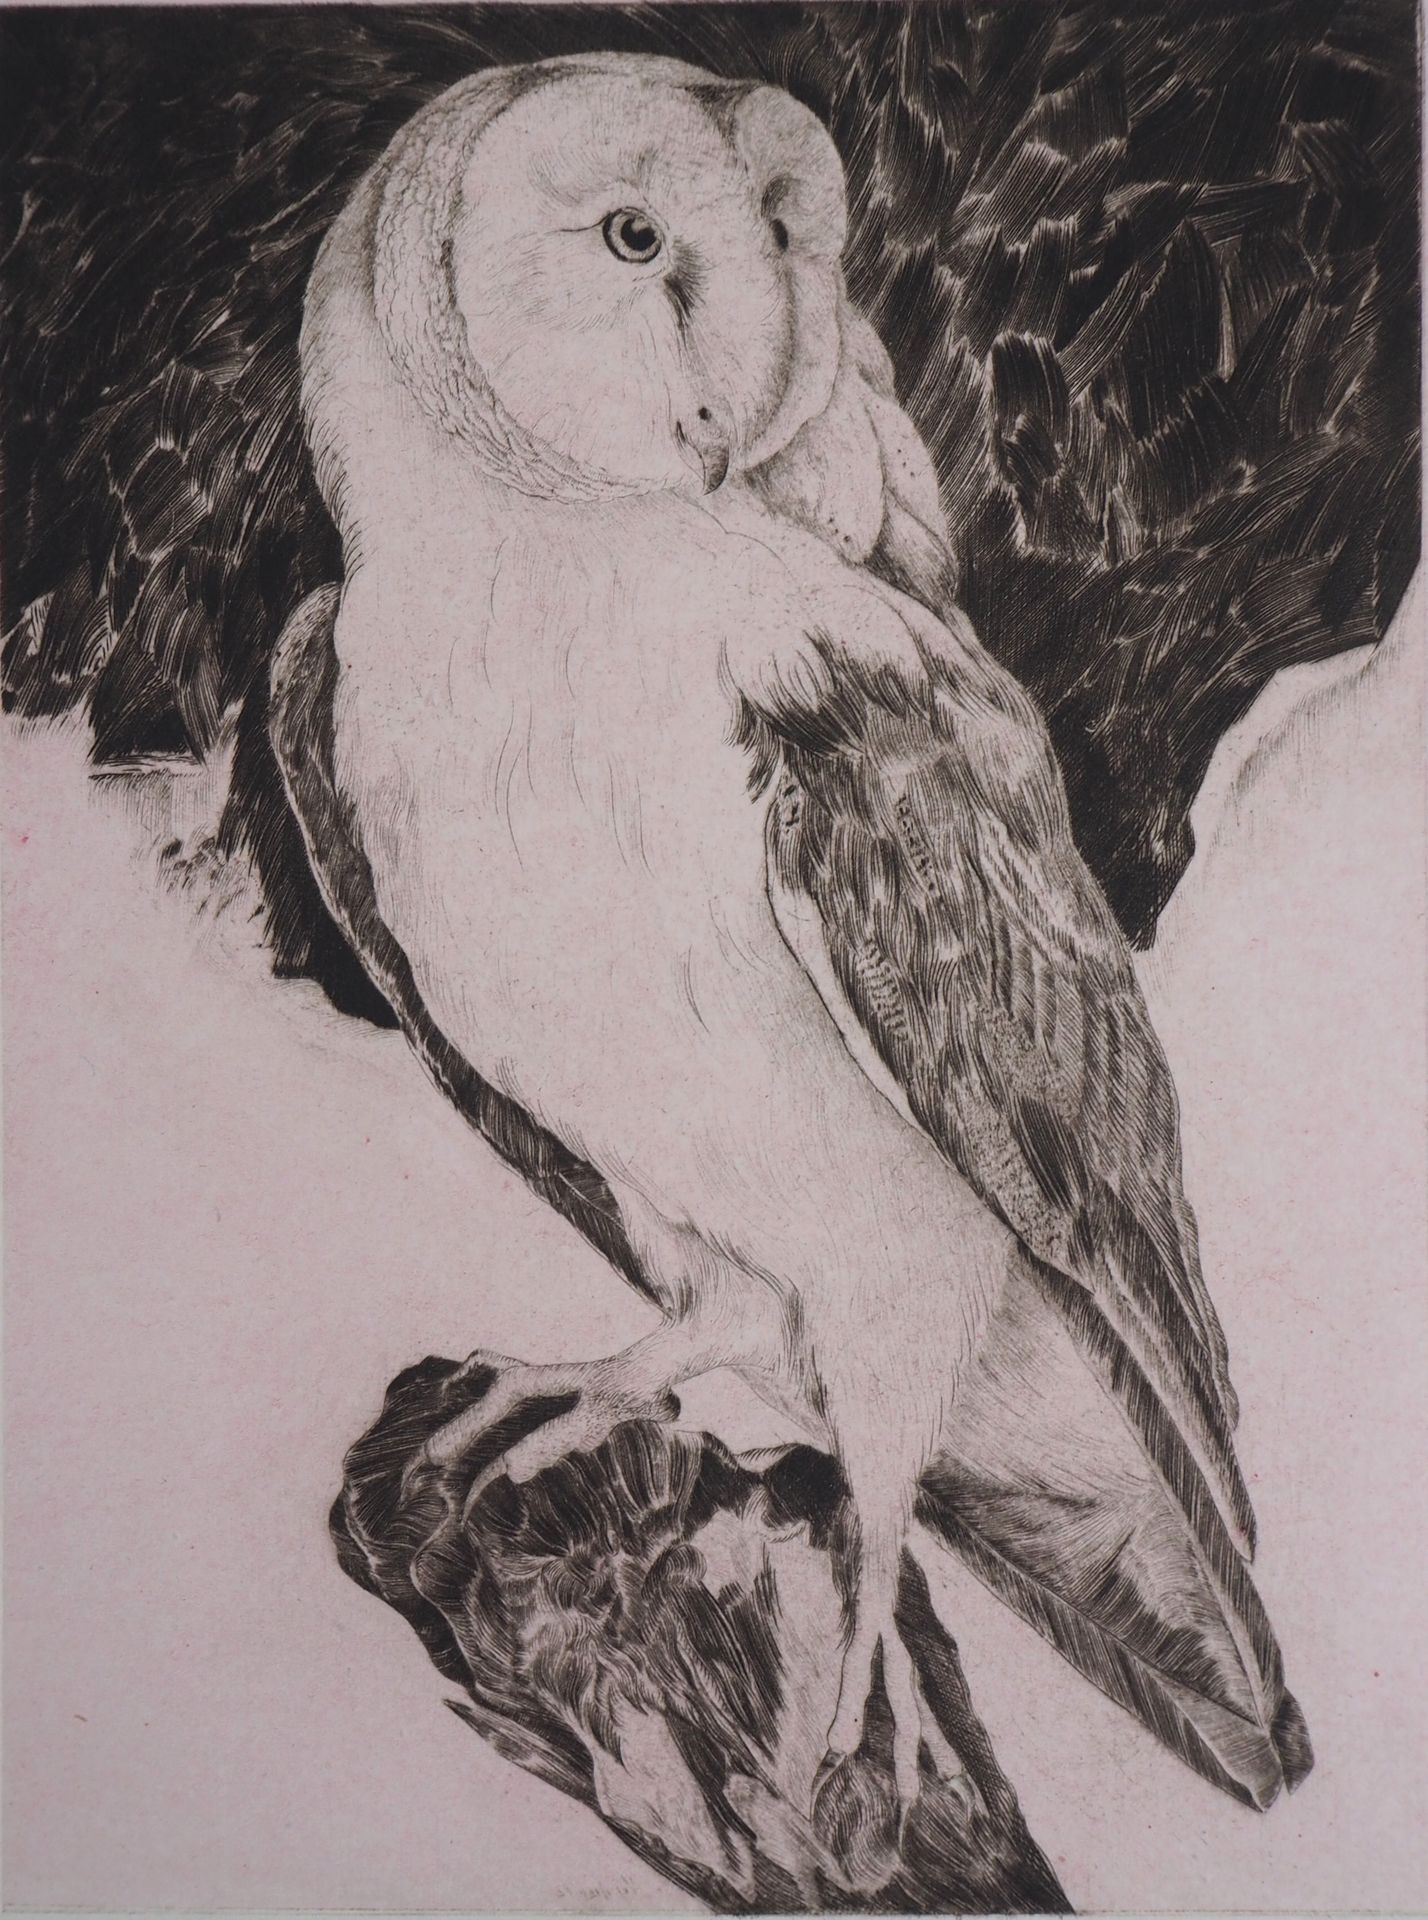 VERDIER 薇尔迪尔(VERDIER)

Owl, 1982

原始蚀刻画

用铅笔签名

合理的E。A.(艺术家的证明)

纸上 33 x 26 cm

&hellip;